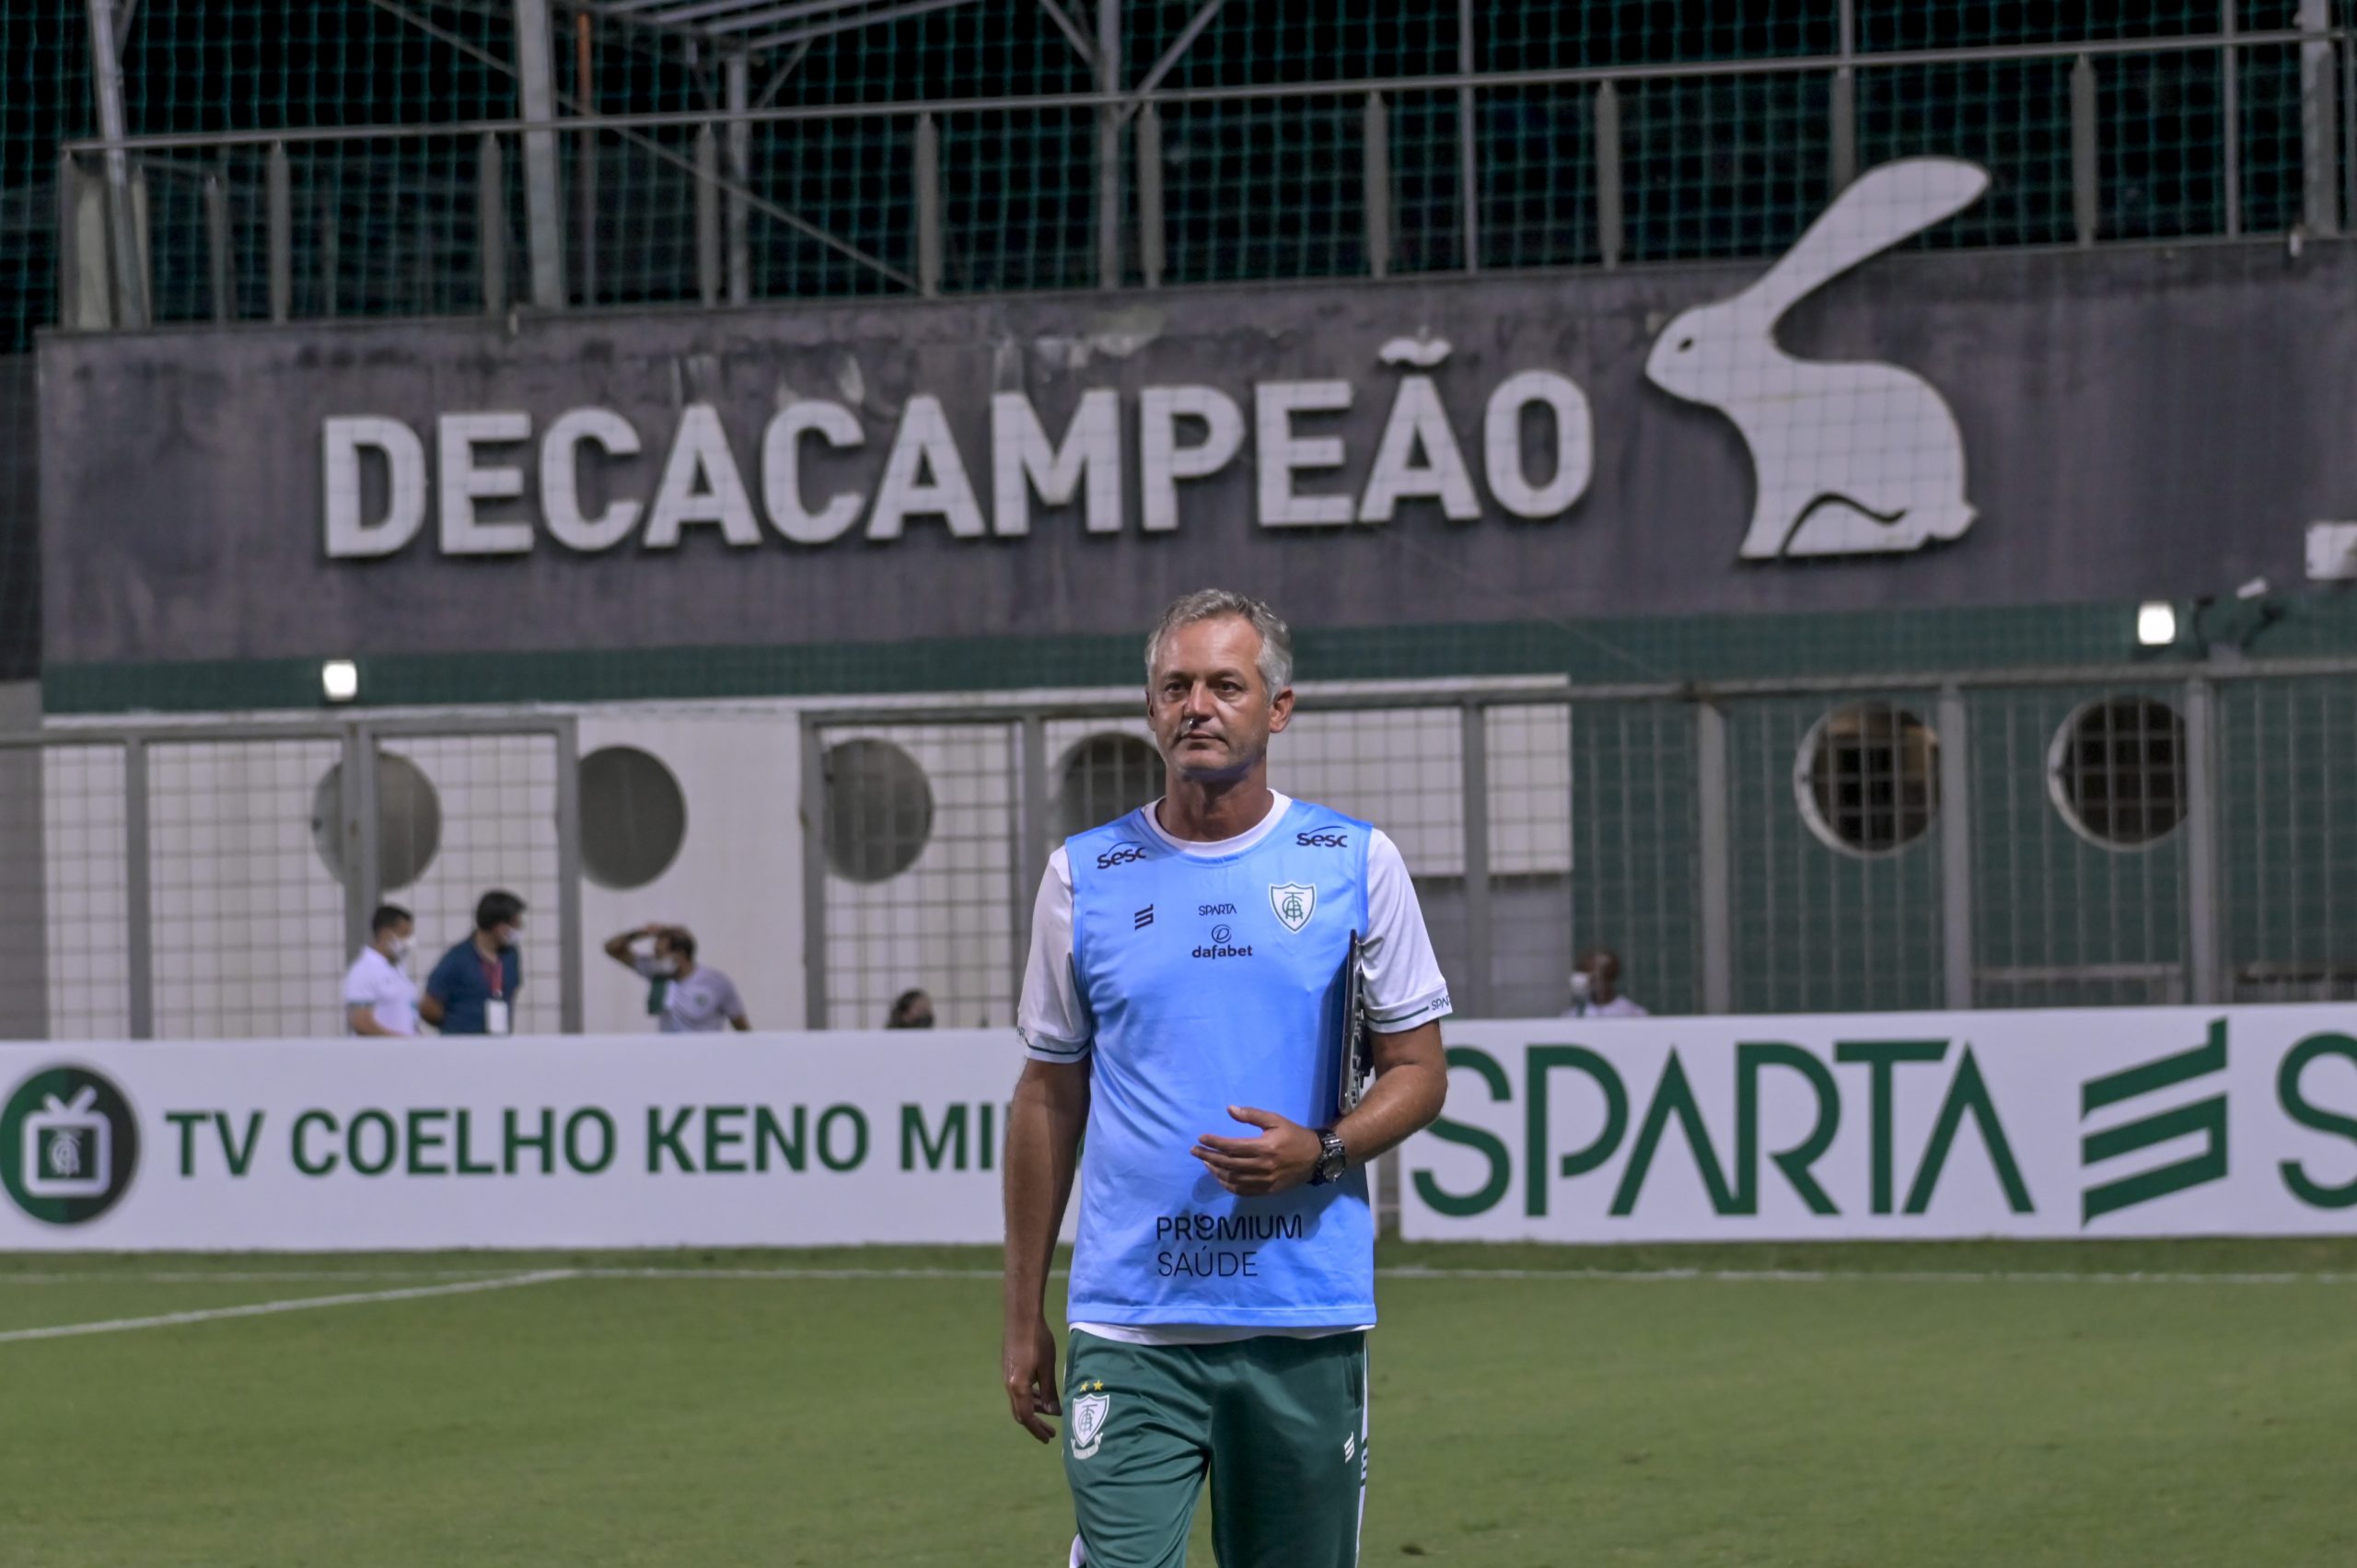 Apesar de suspensão, Lisca estará no Independência para acompanhar América-MG e Cruzeiro